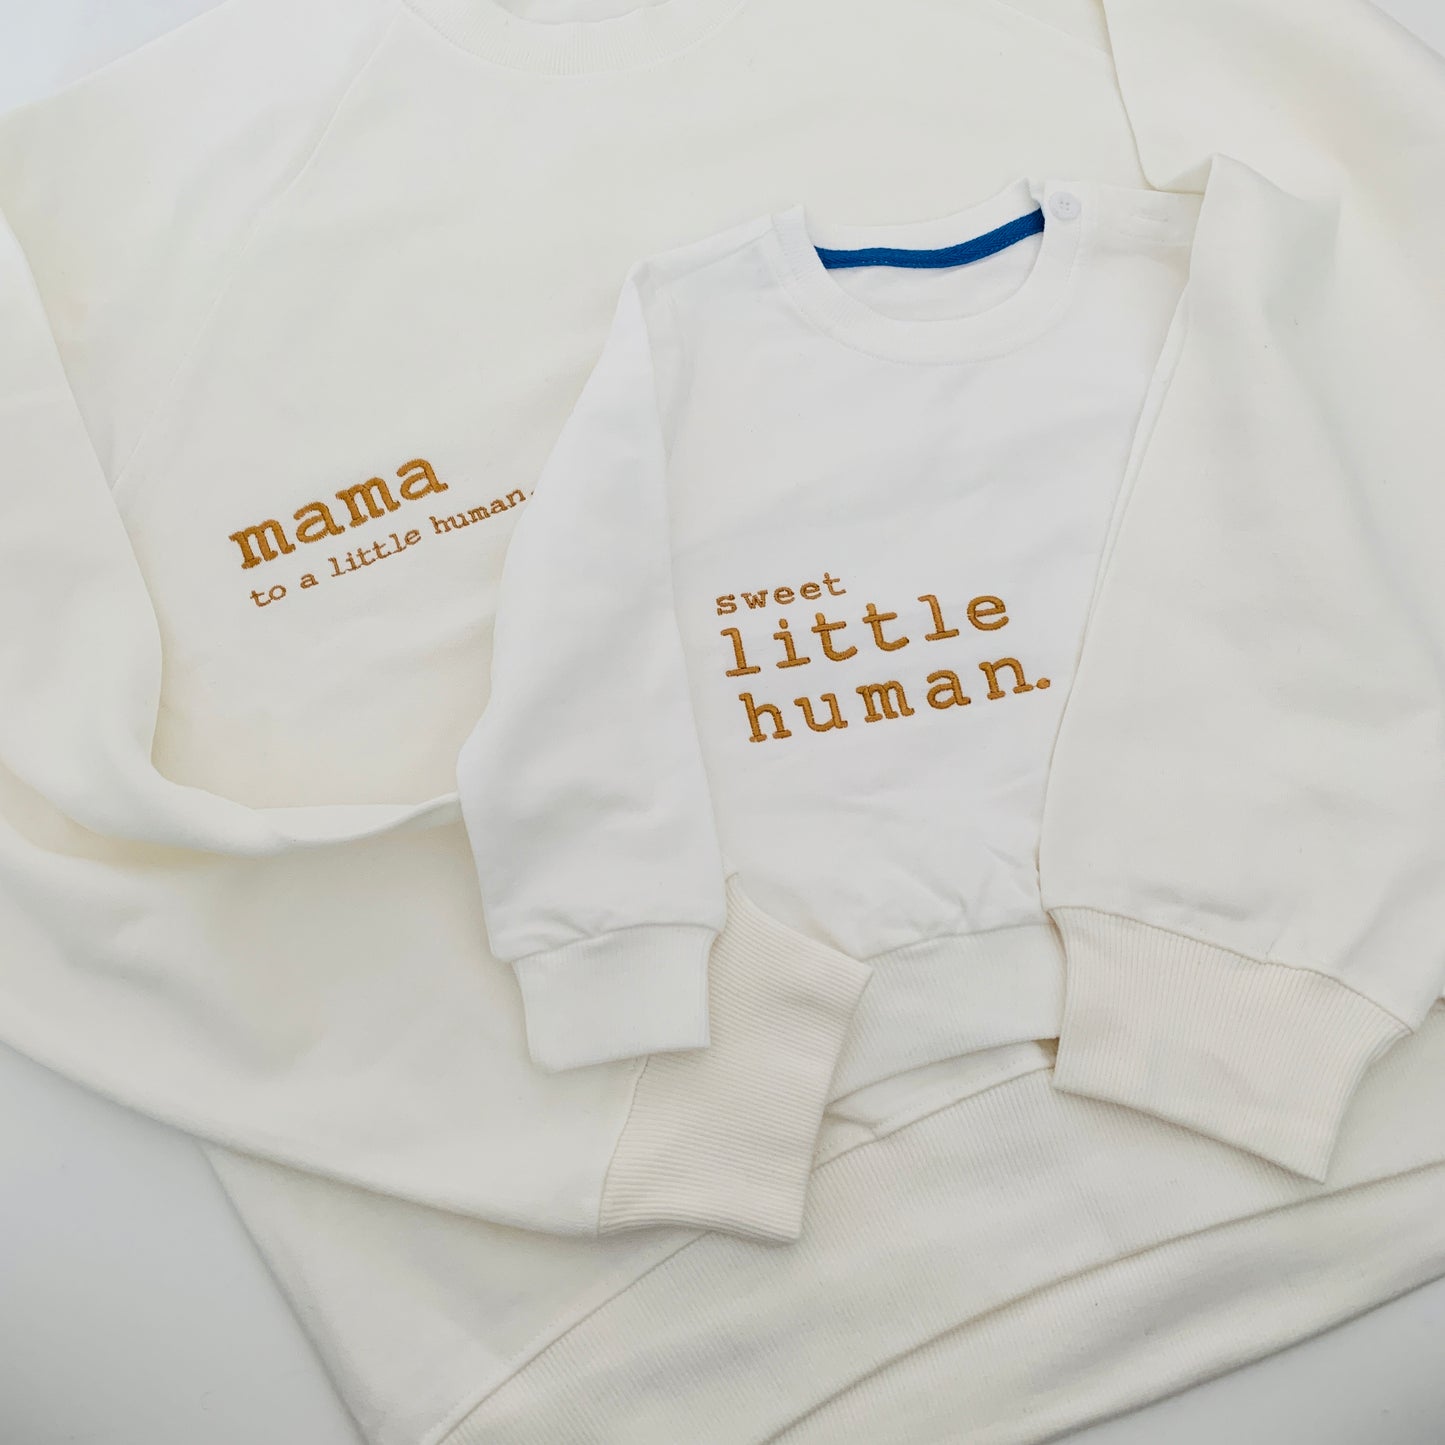 SALE - Children’s Little Human Sweatshirts in White Sweet, Weird or Wild